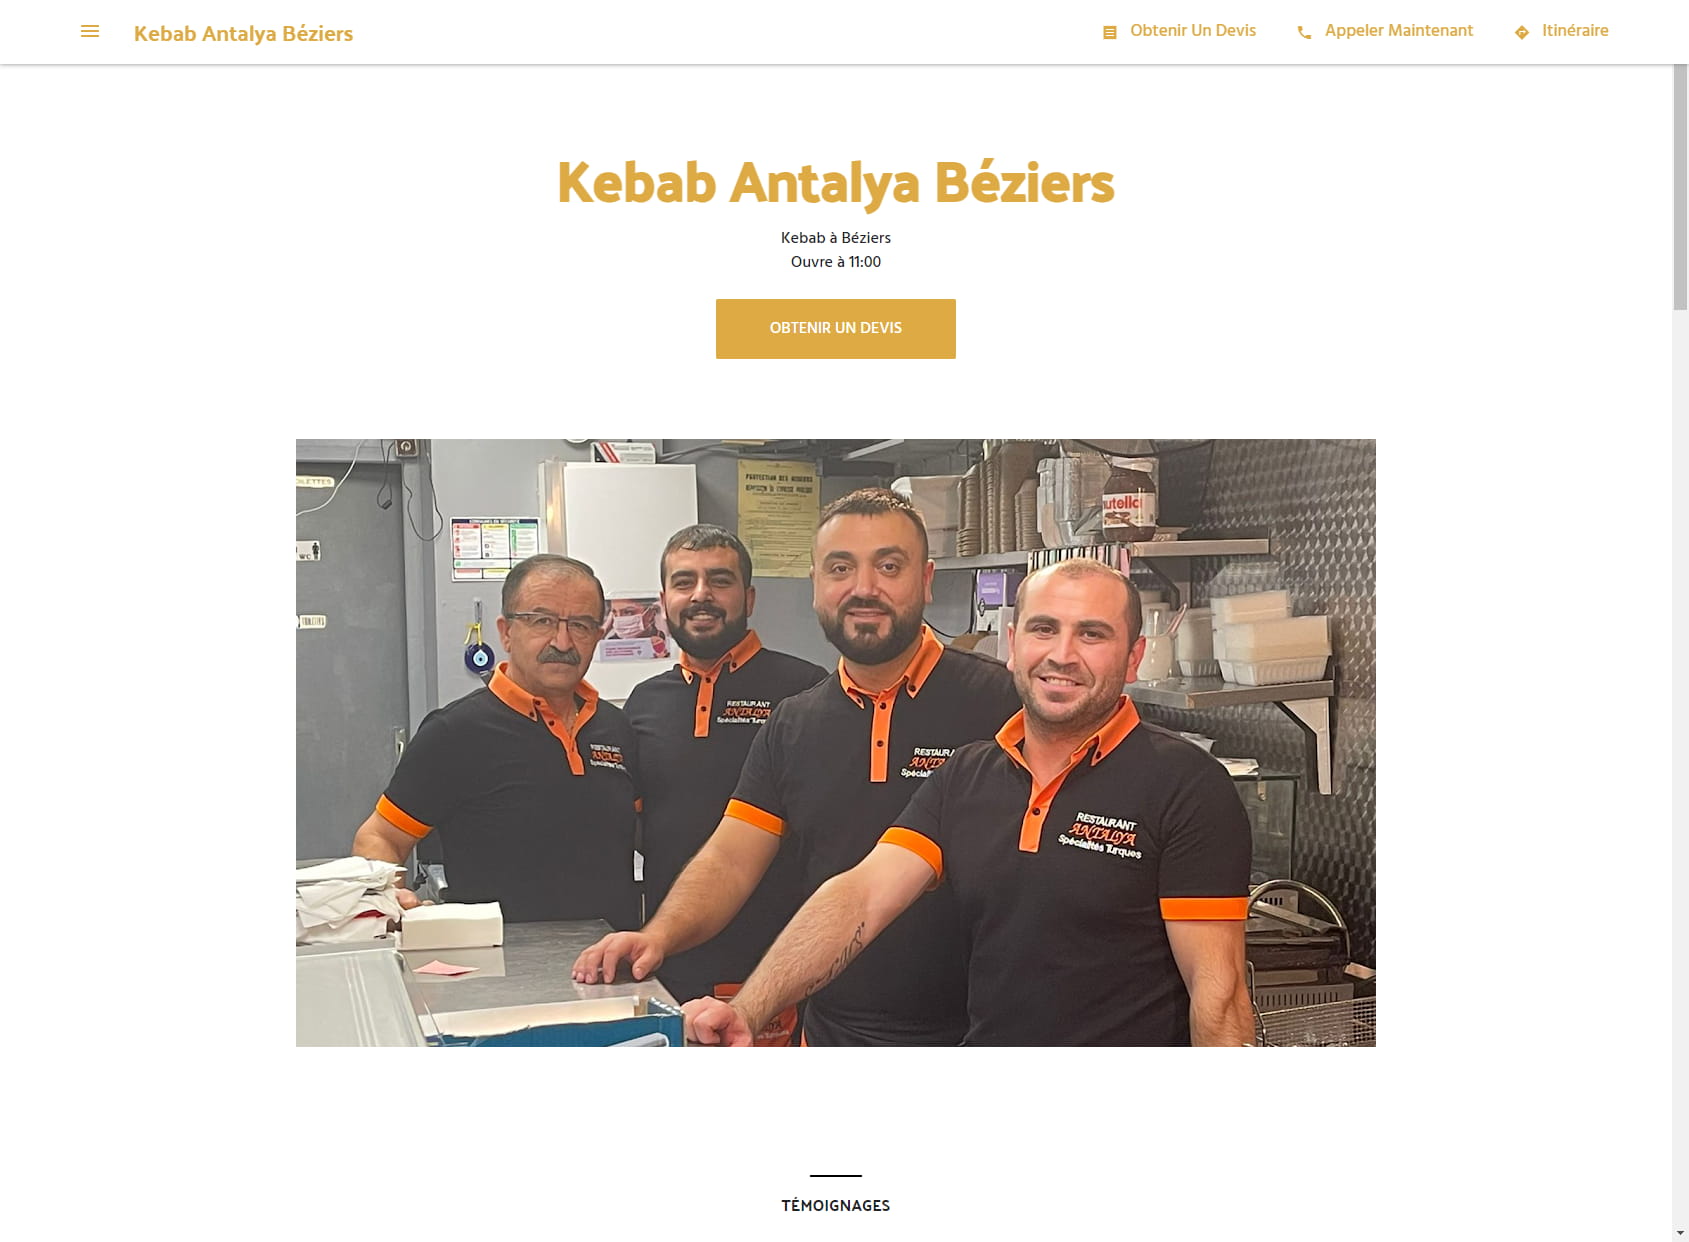 Kebab Antalya Béziers